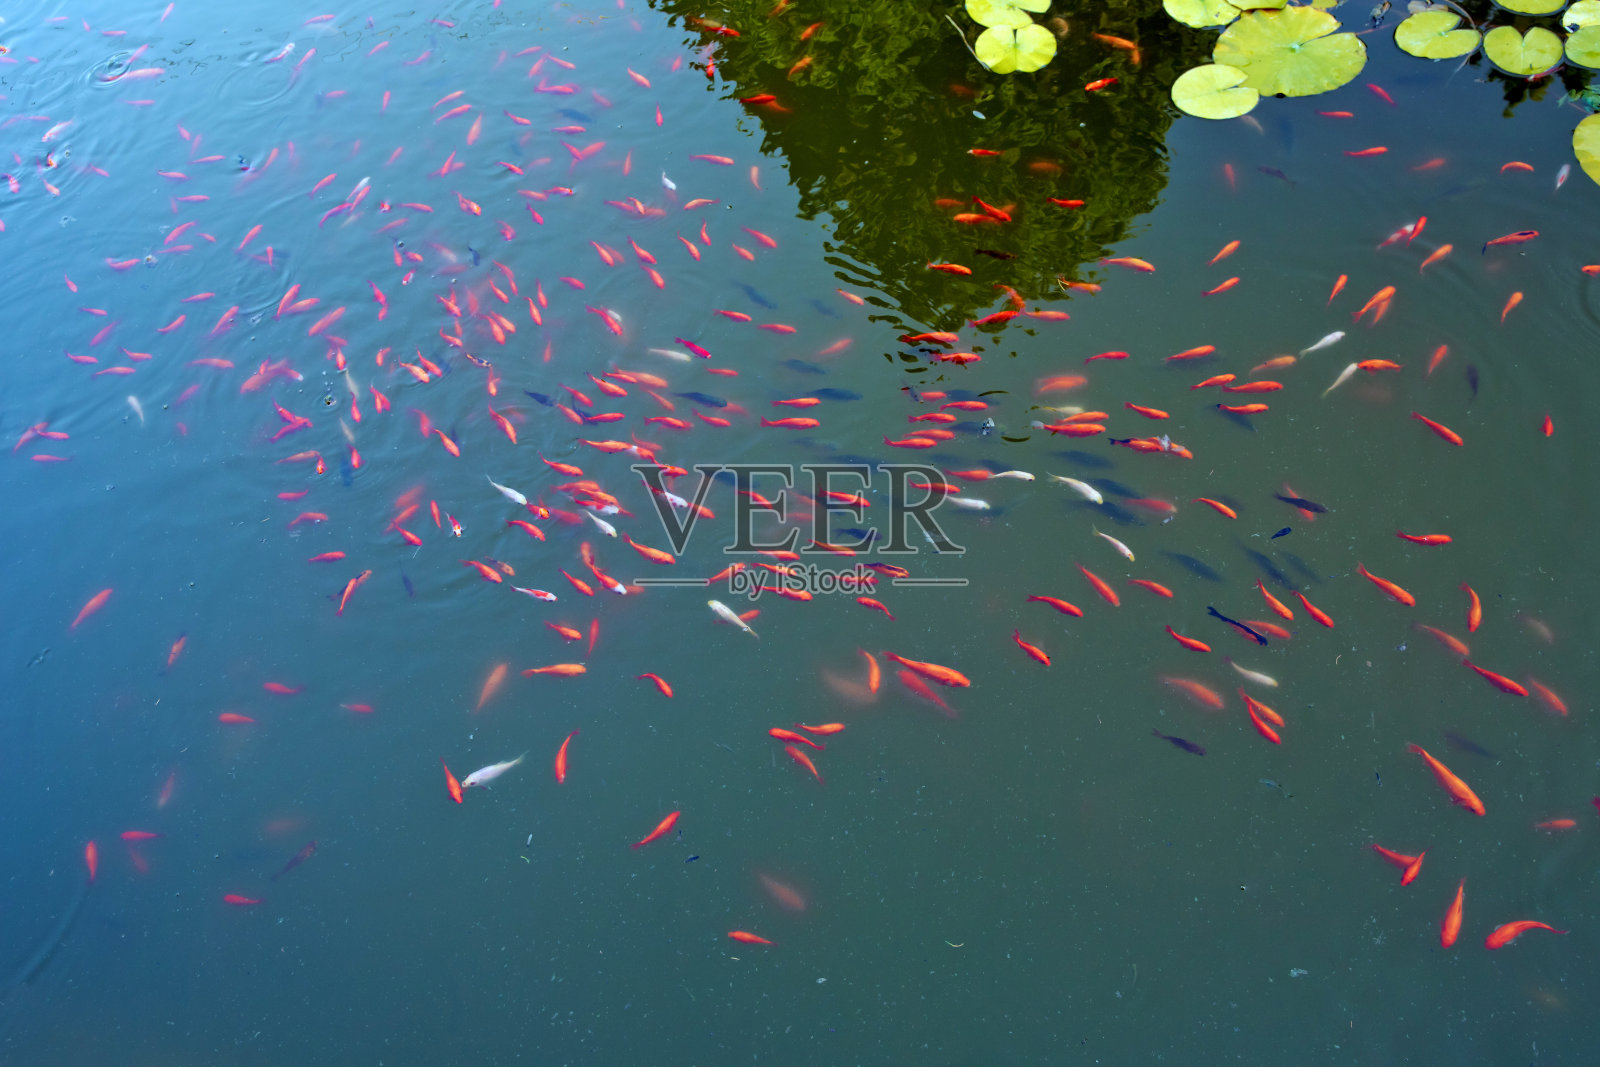 红色的鱼是一条鱼。令人惊叹的美丽鲜艳的红橙色锦鲤干净的水池塘湖泊为背景和壁纸使用。红色鱼类的动物图片。照片摄影图片